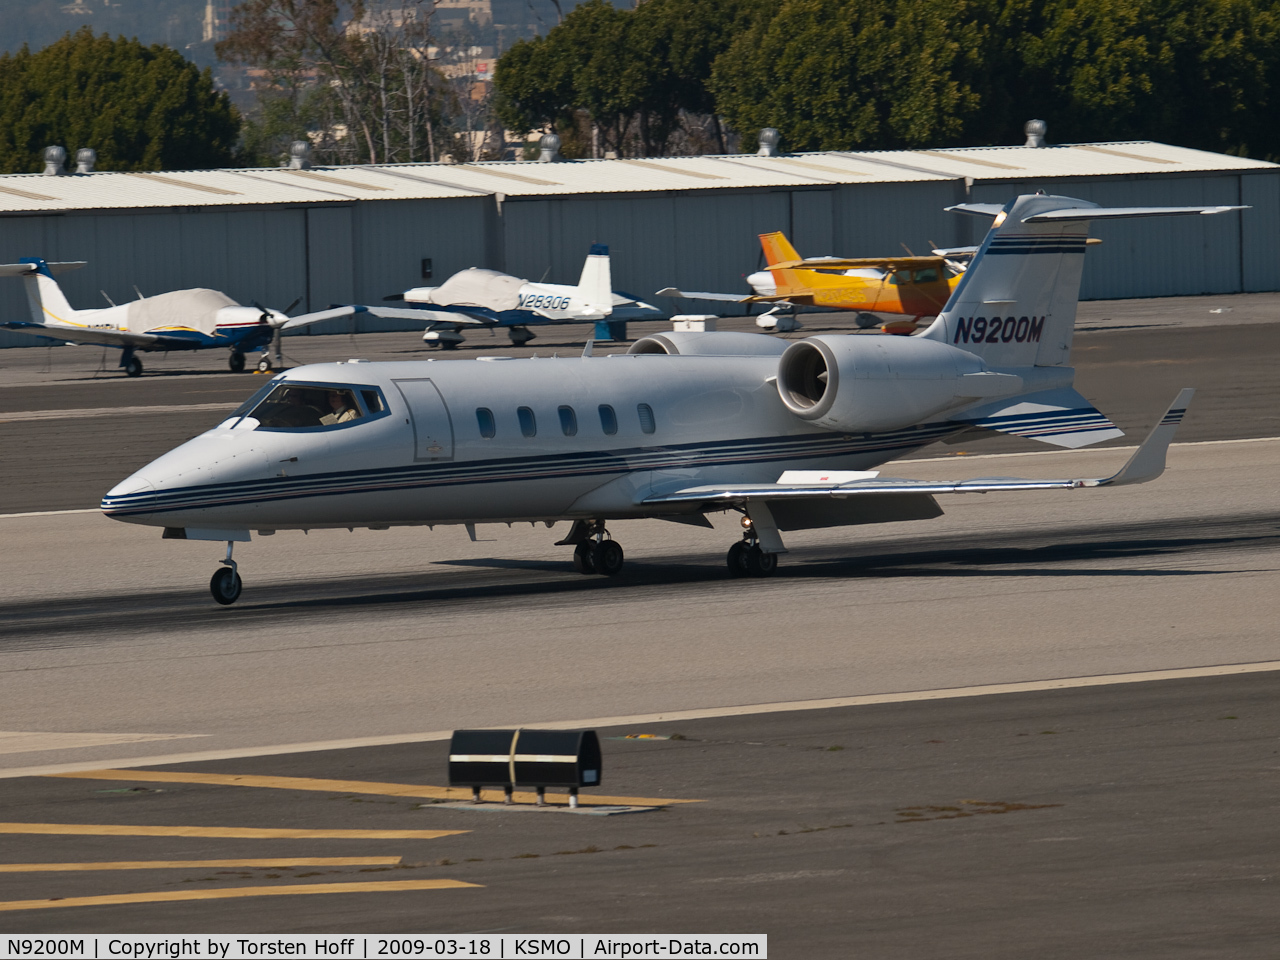 N9200M, 1998 Learjet Inc 60 C/N 132, N9200M arriving on RWY 21